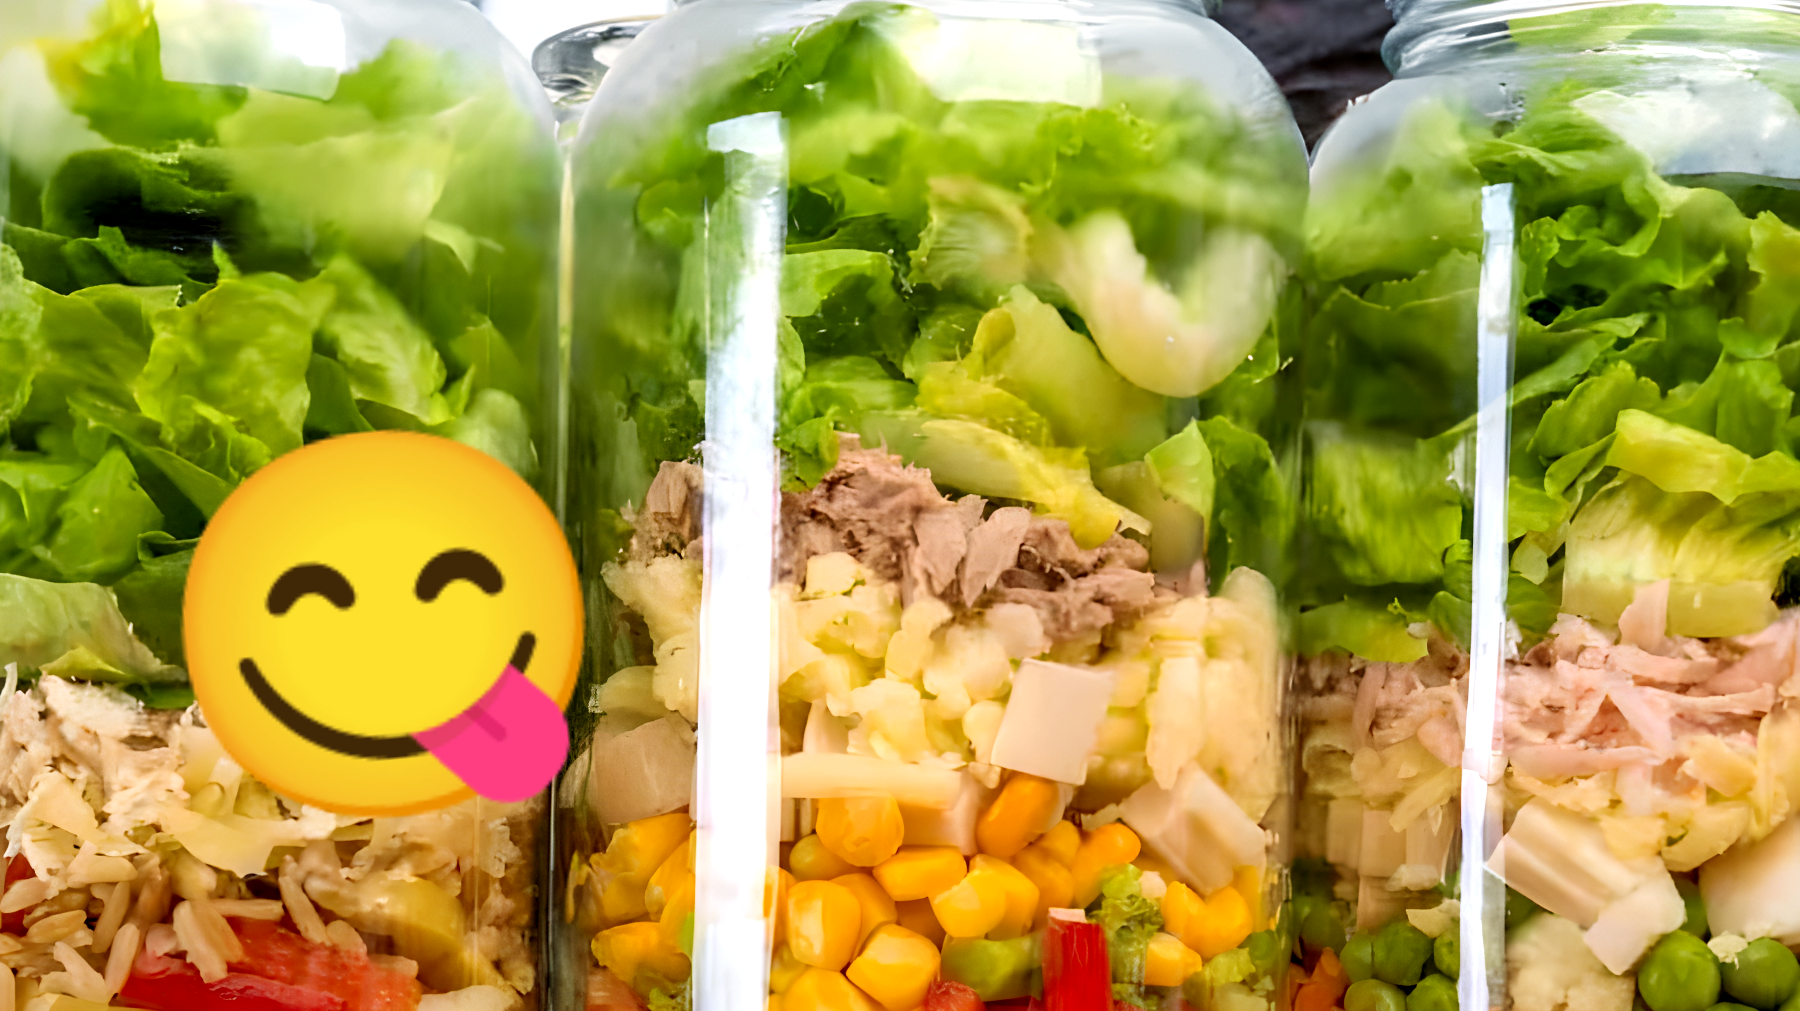 Le insalate in barattolo rivoluzionano la dieta: "Sto perdendo peso più velocemente!"